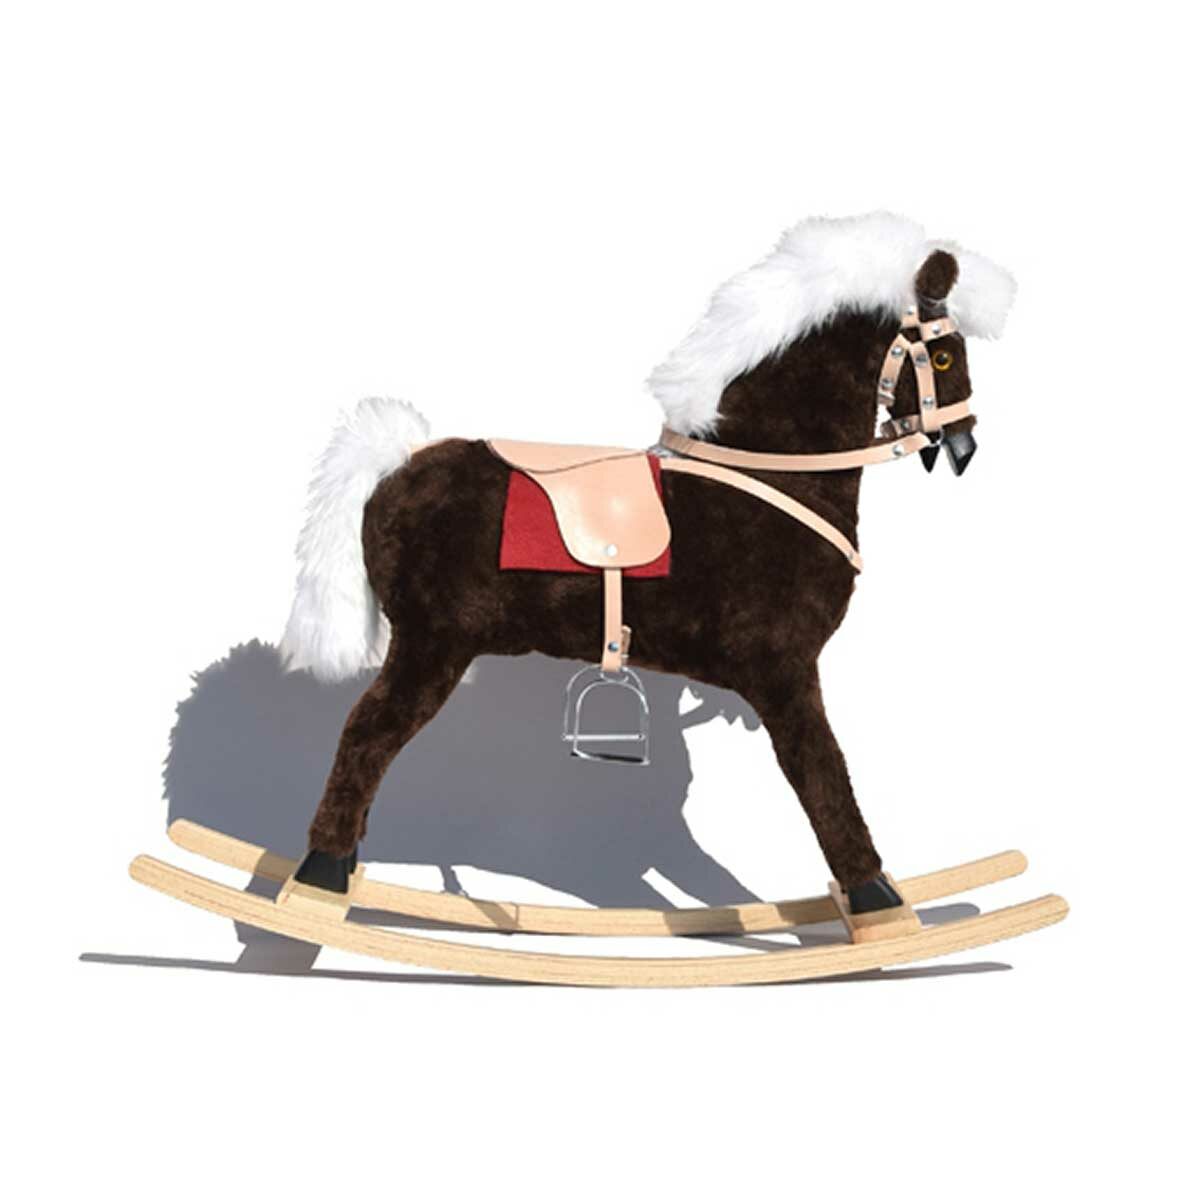 GLORIOSA rocking horse with leather saddle